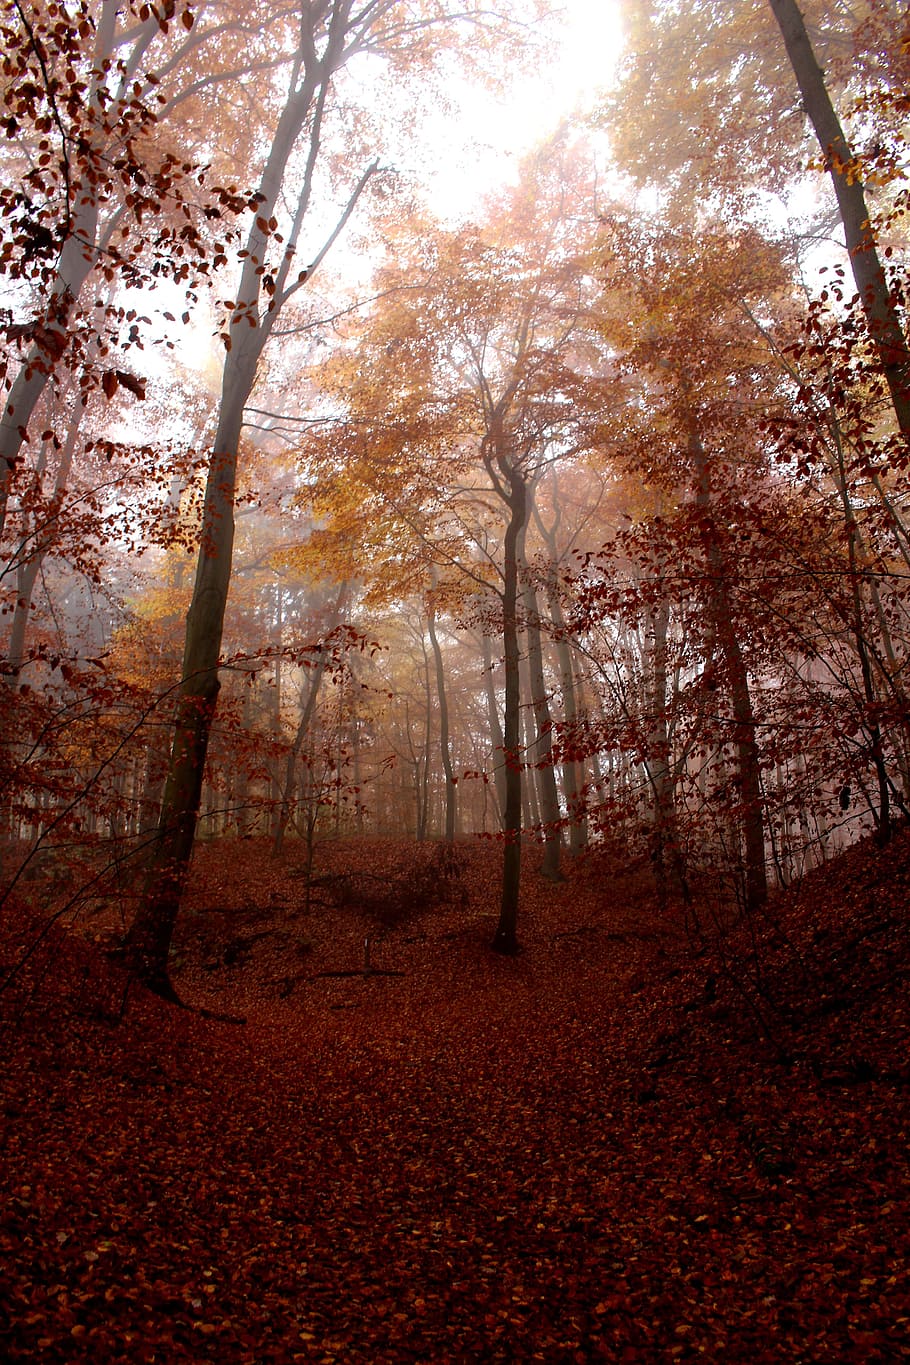 sinar krepuskular, pemandangan hutan, kabut, hutan, musim gugur, merah, dingin, mistis, suasana hati, tidak berwarna